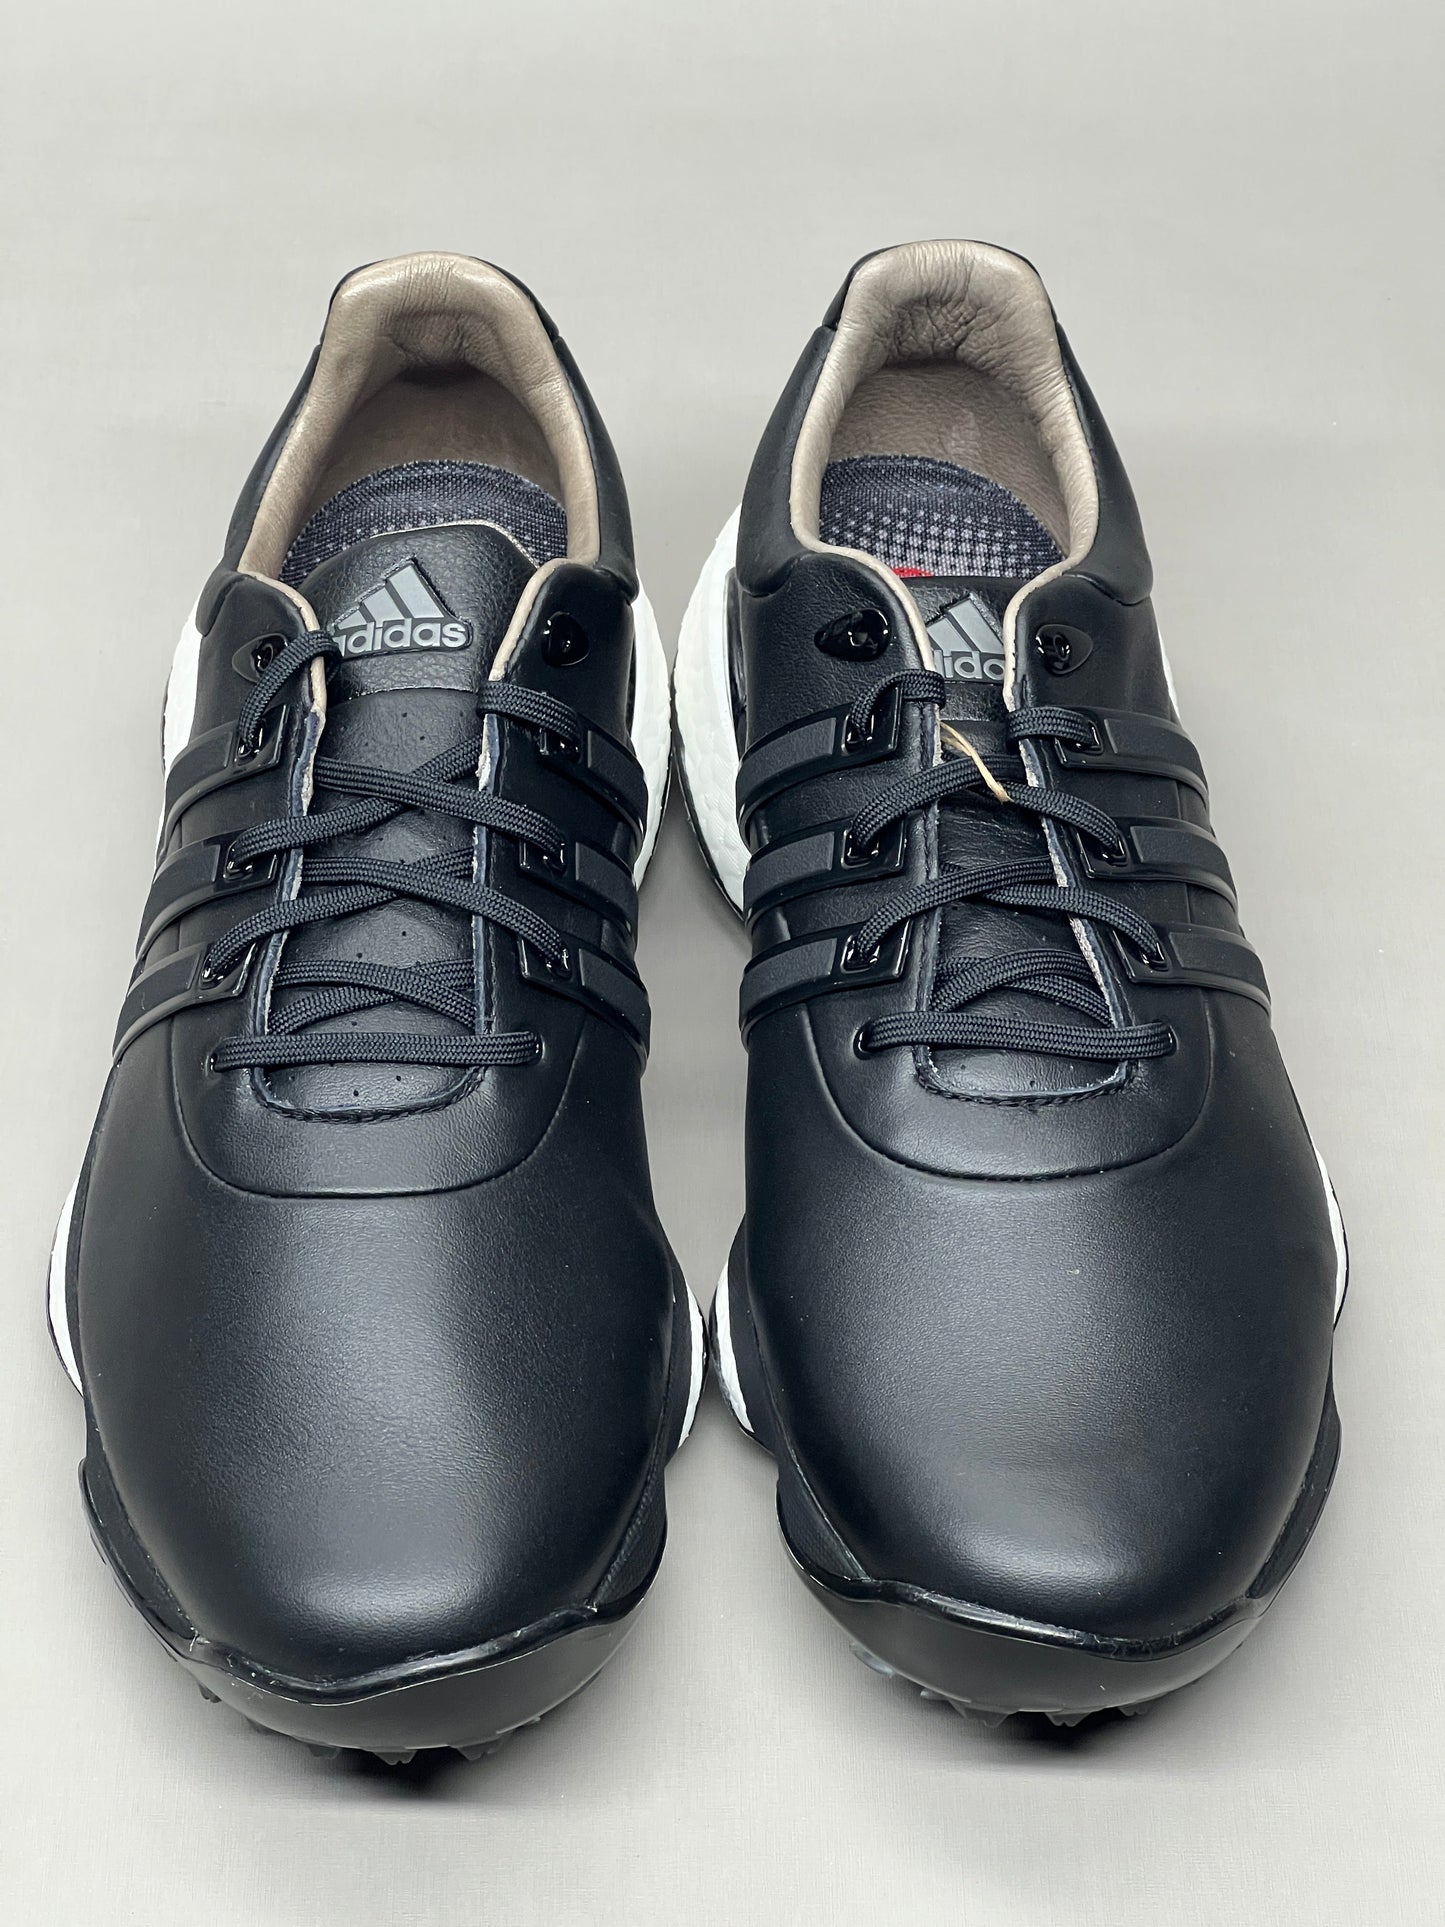 ADIDAS Golf Shoes TOUR360 22 Leather Men's Sz 9.5 Black / Iron Metallic GZ3158 (New)